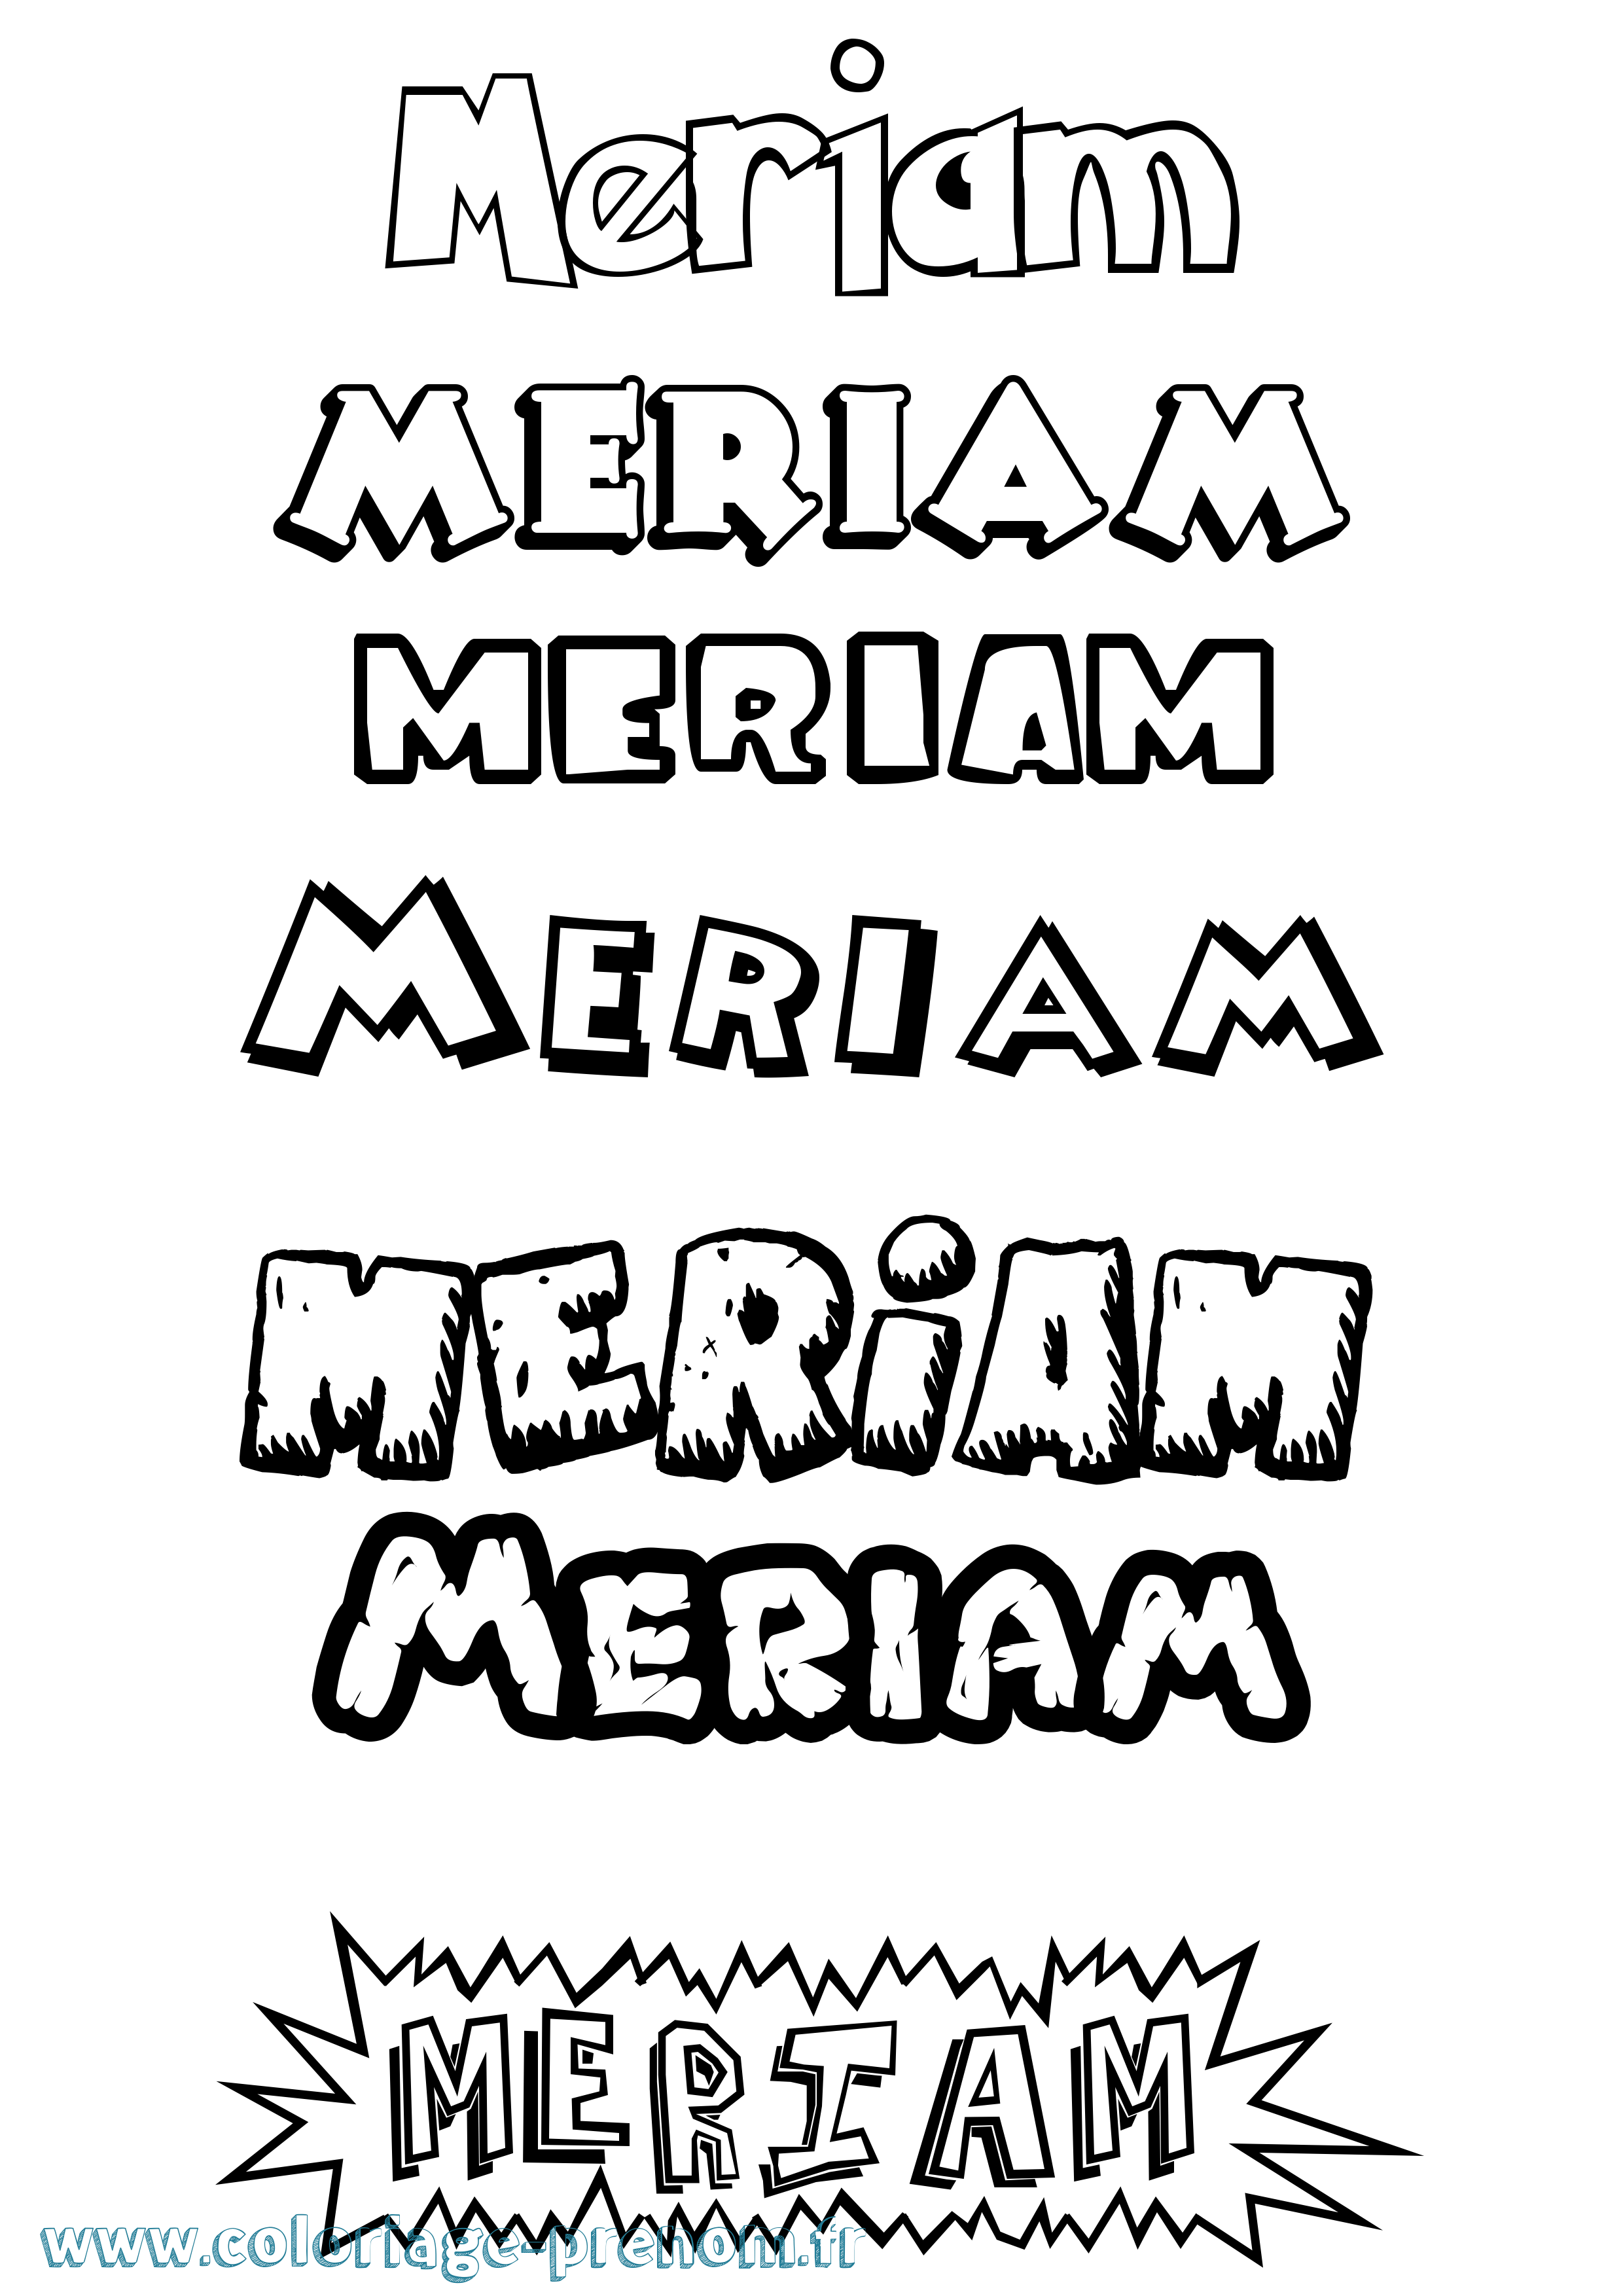 Coloriage prénom Meriam